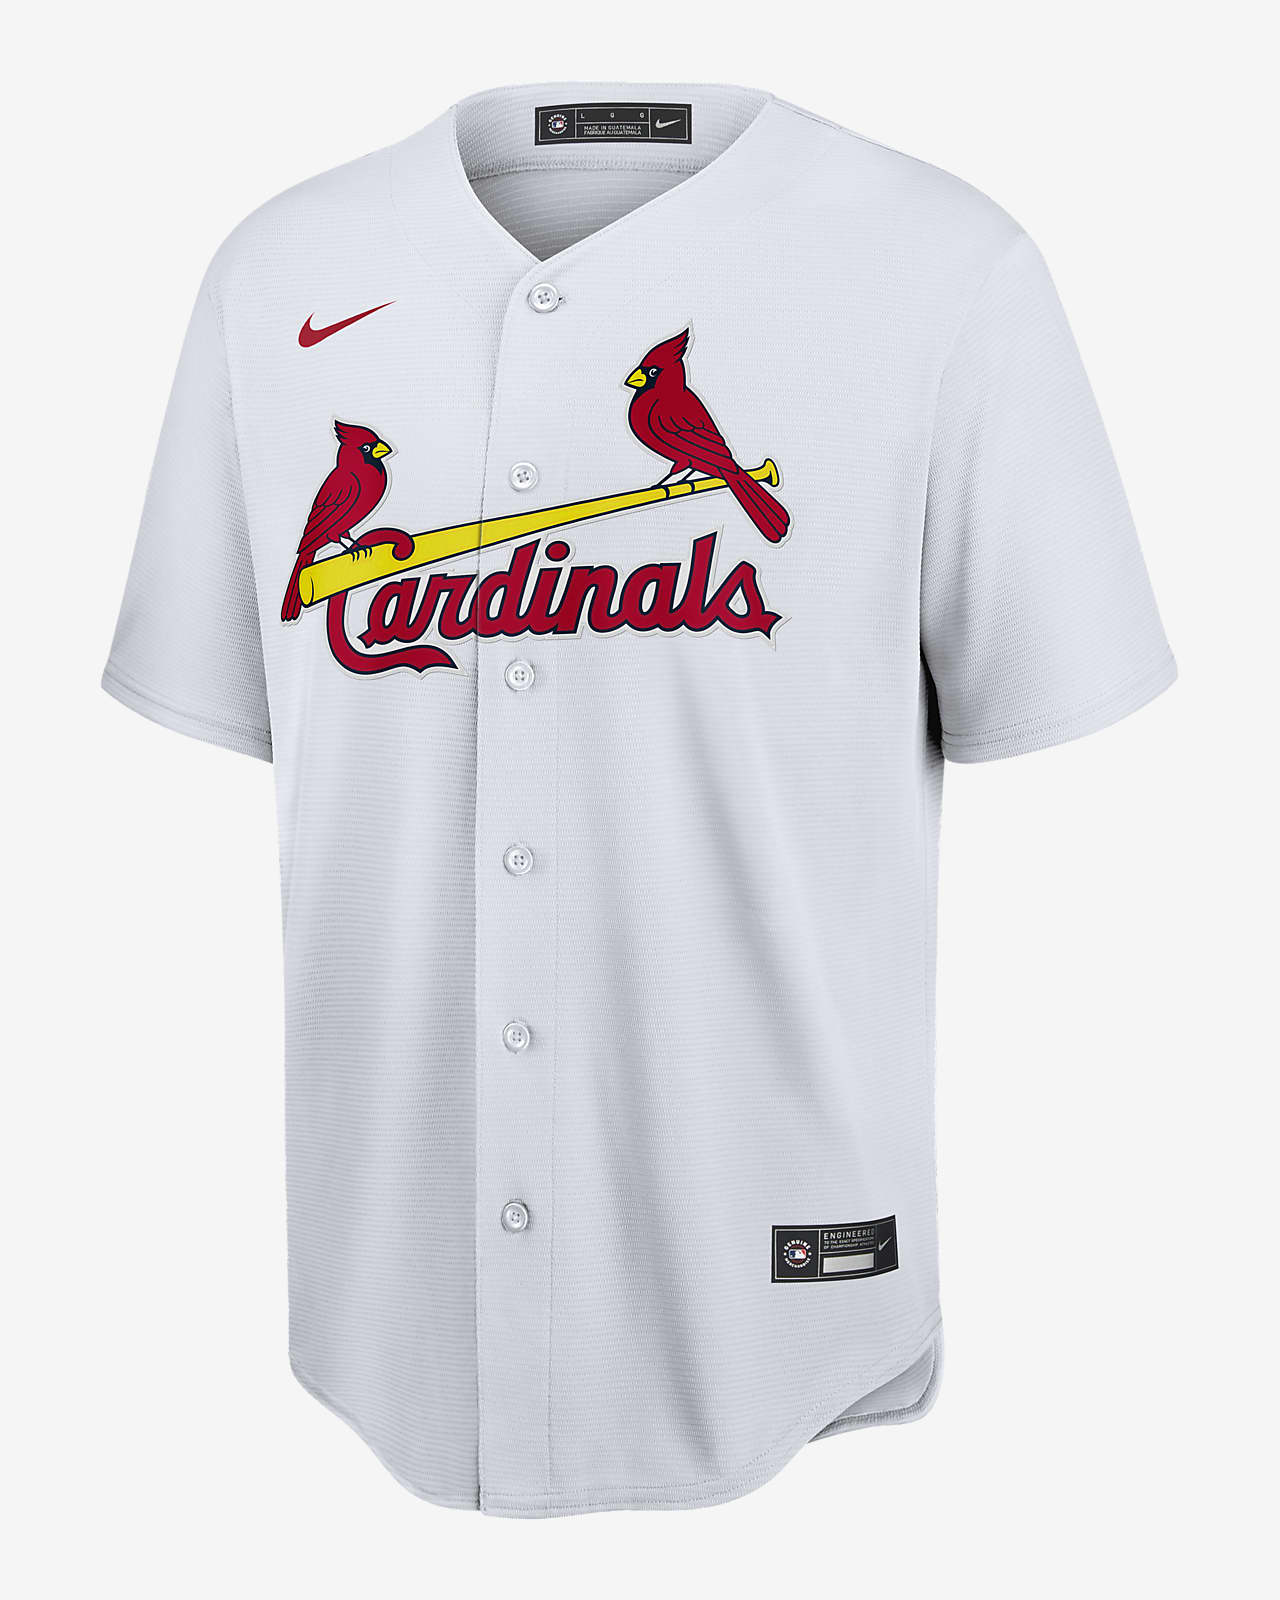 st louis cardinals jersey cheap